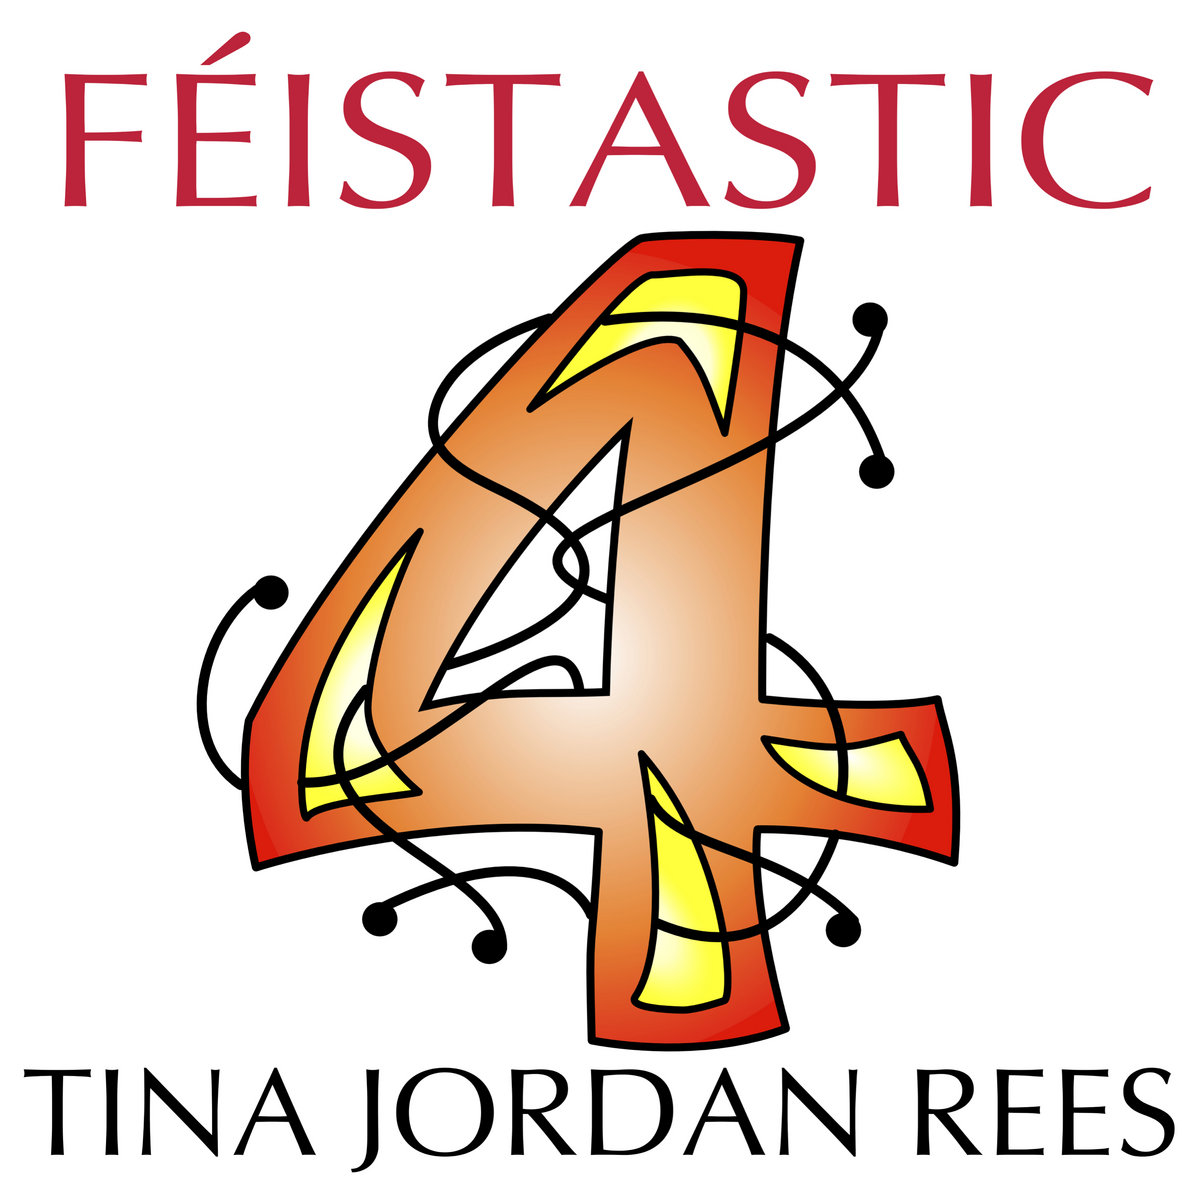 Féistastic 4 - Tina Jordon Rees